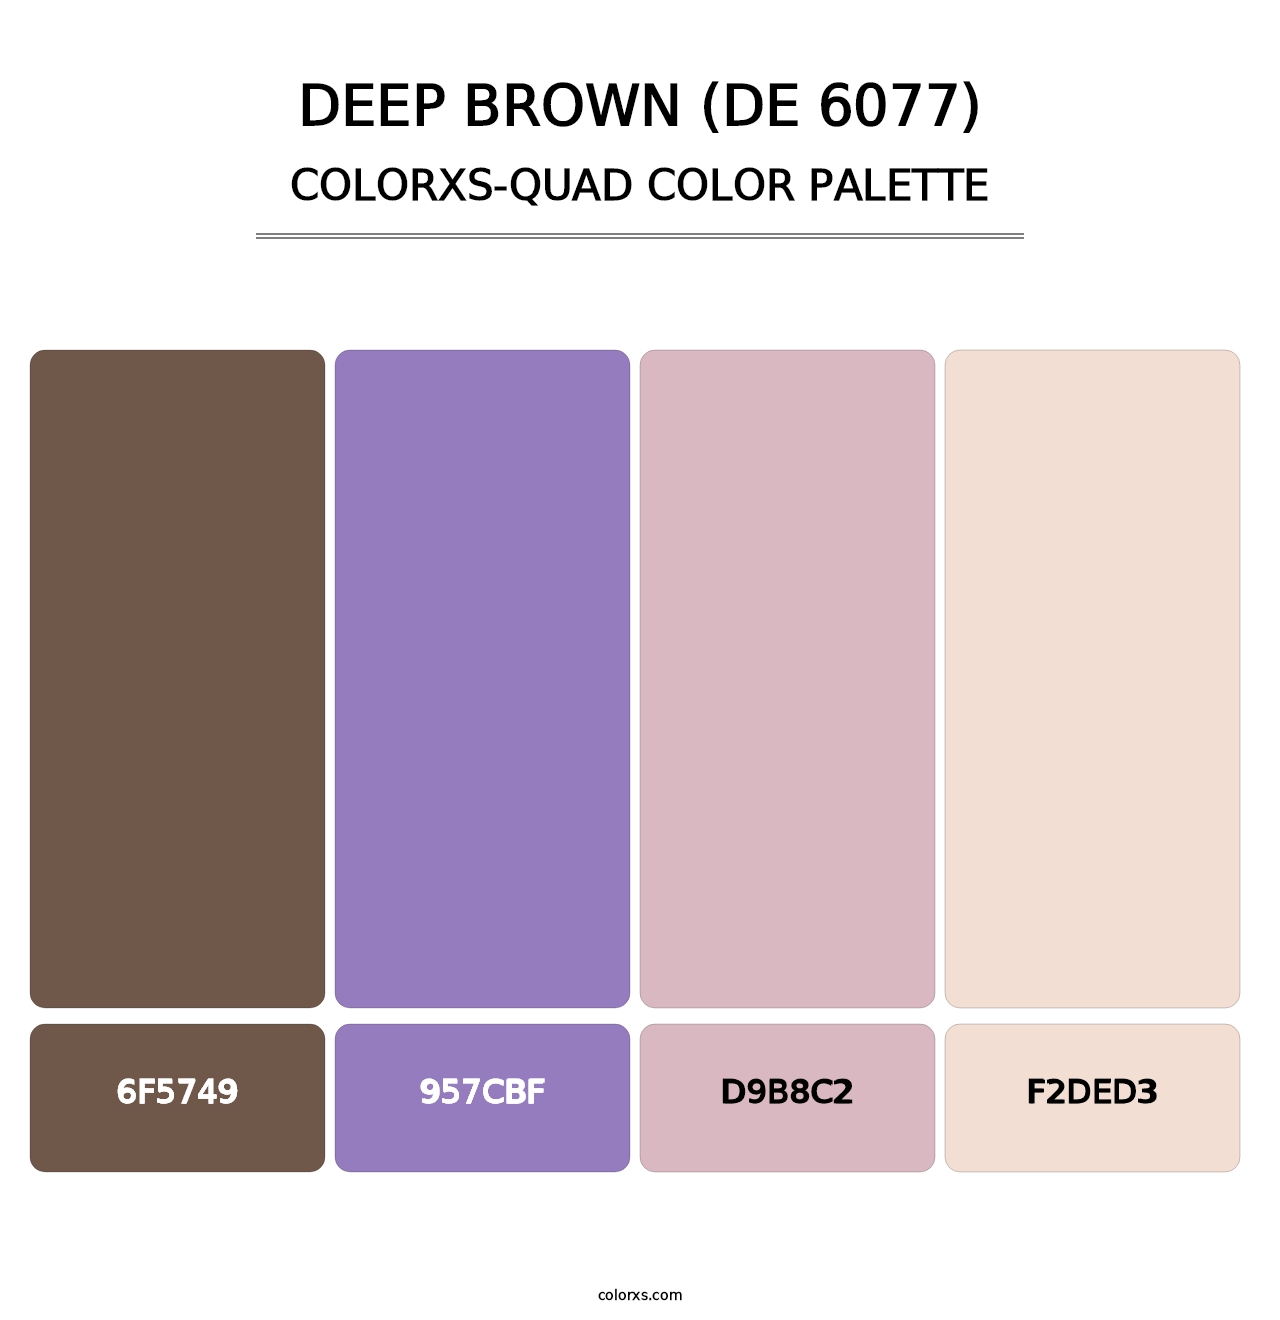 Deep Brown (DE 6077) - Colorxs Quad Palette